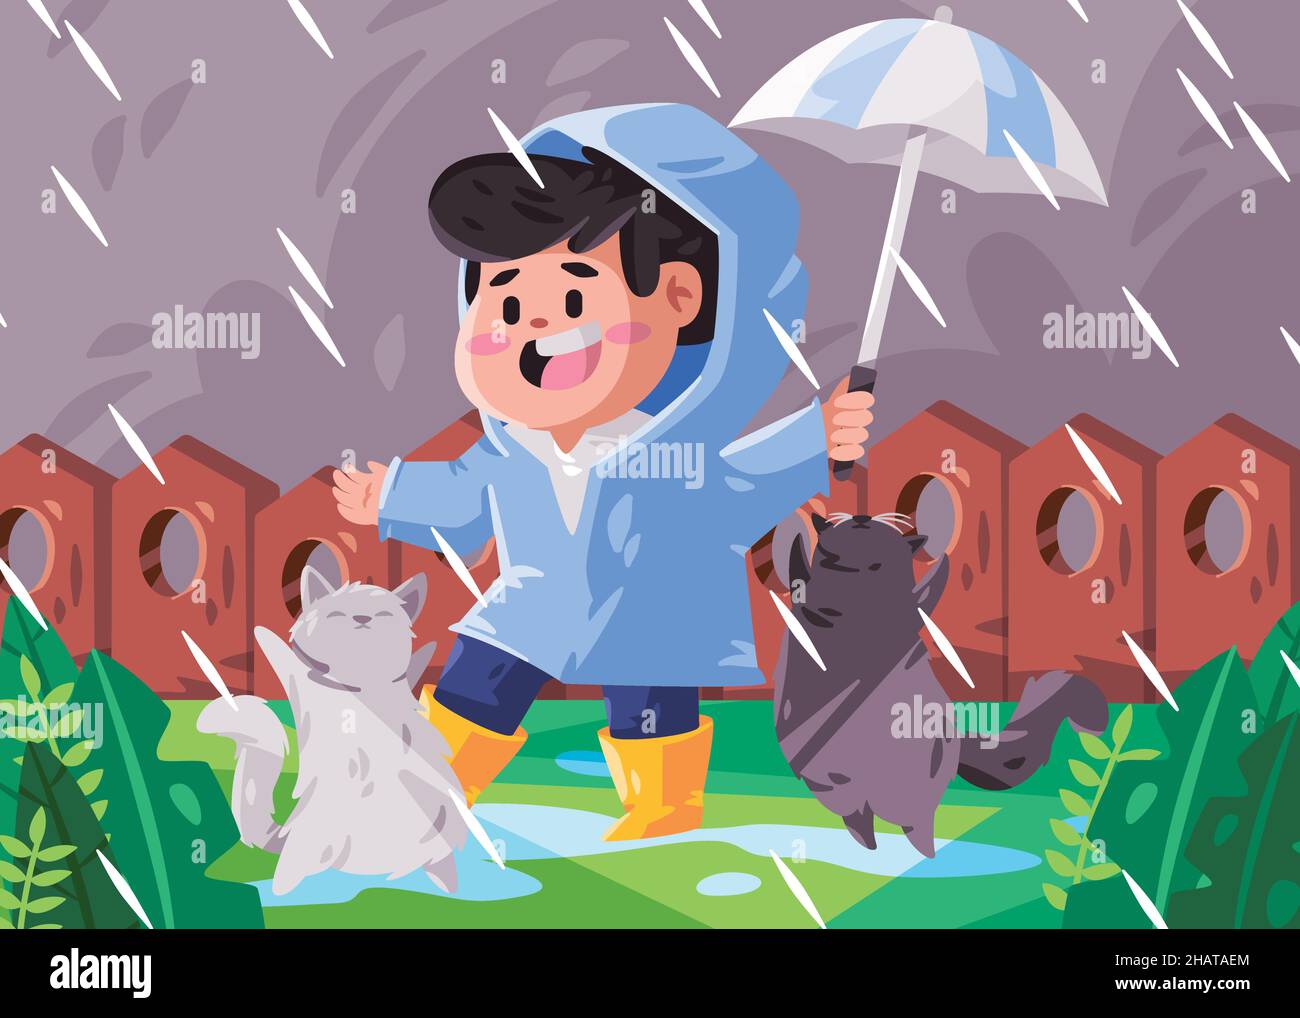 Junge Kinder Kinder mit blauem Mantel und gelben Stiefeln halten Regenschirm spielen regen mit Glück Cartoon flache Farbe isoliert Hintergrund Illustration Stock Vektor